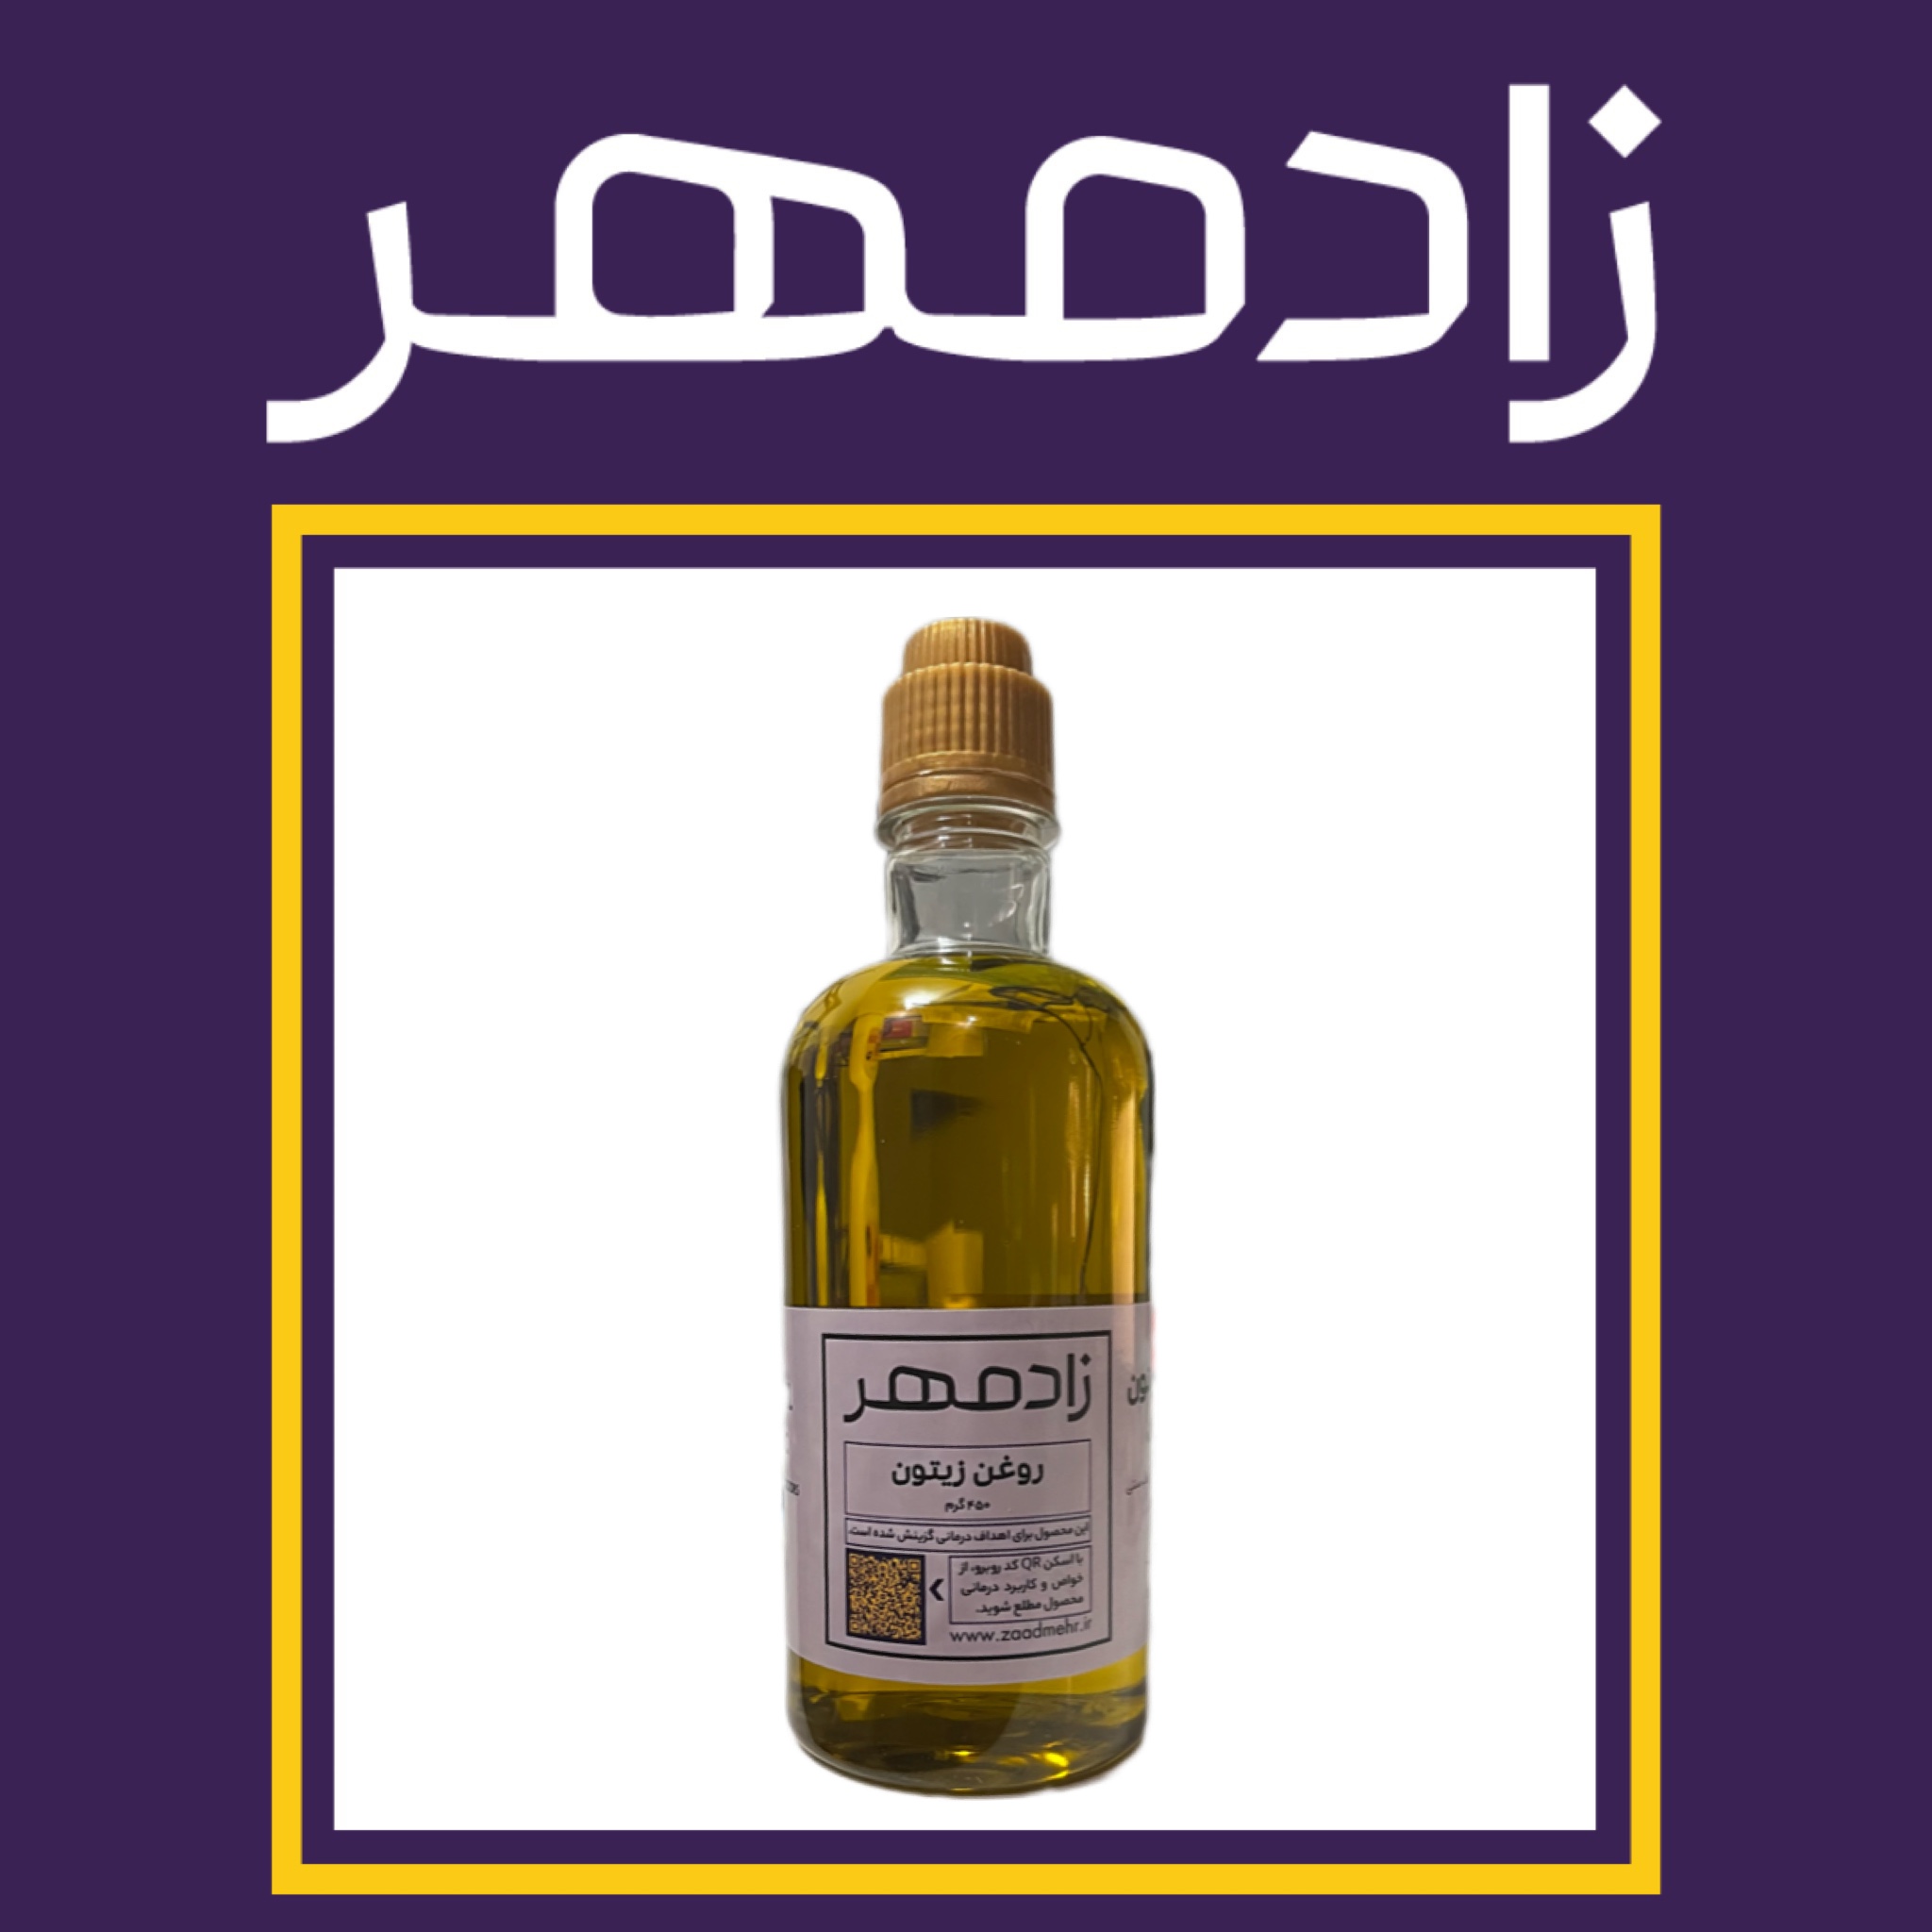 روغن زیتون درمانی زادمهر - Zaadmehr olive oil for treatment